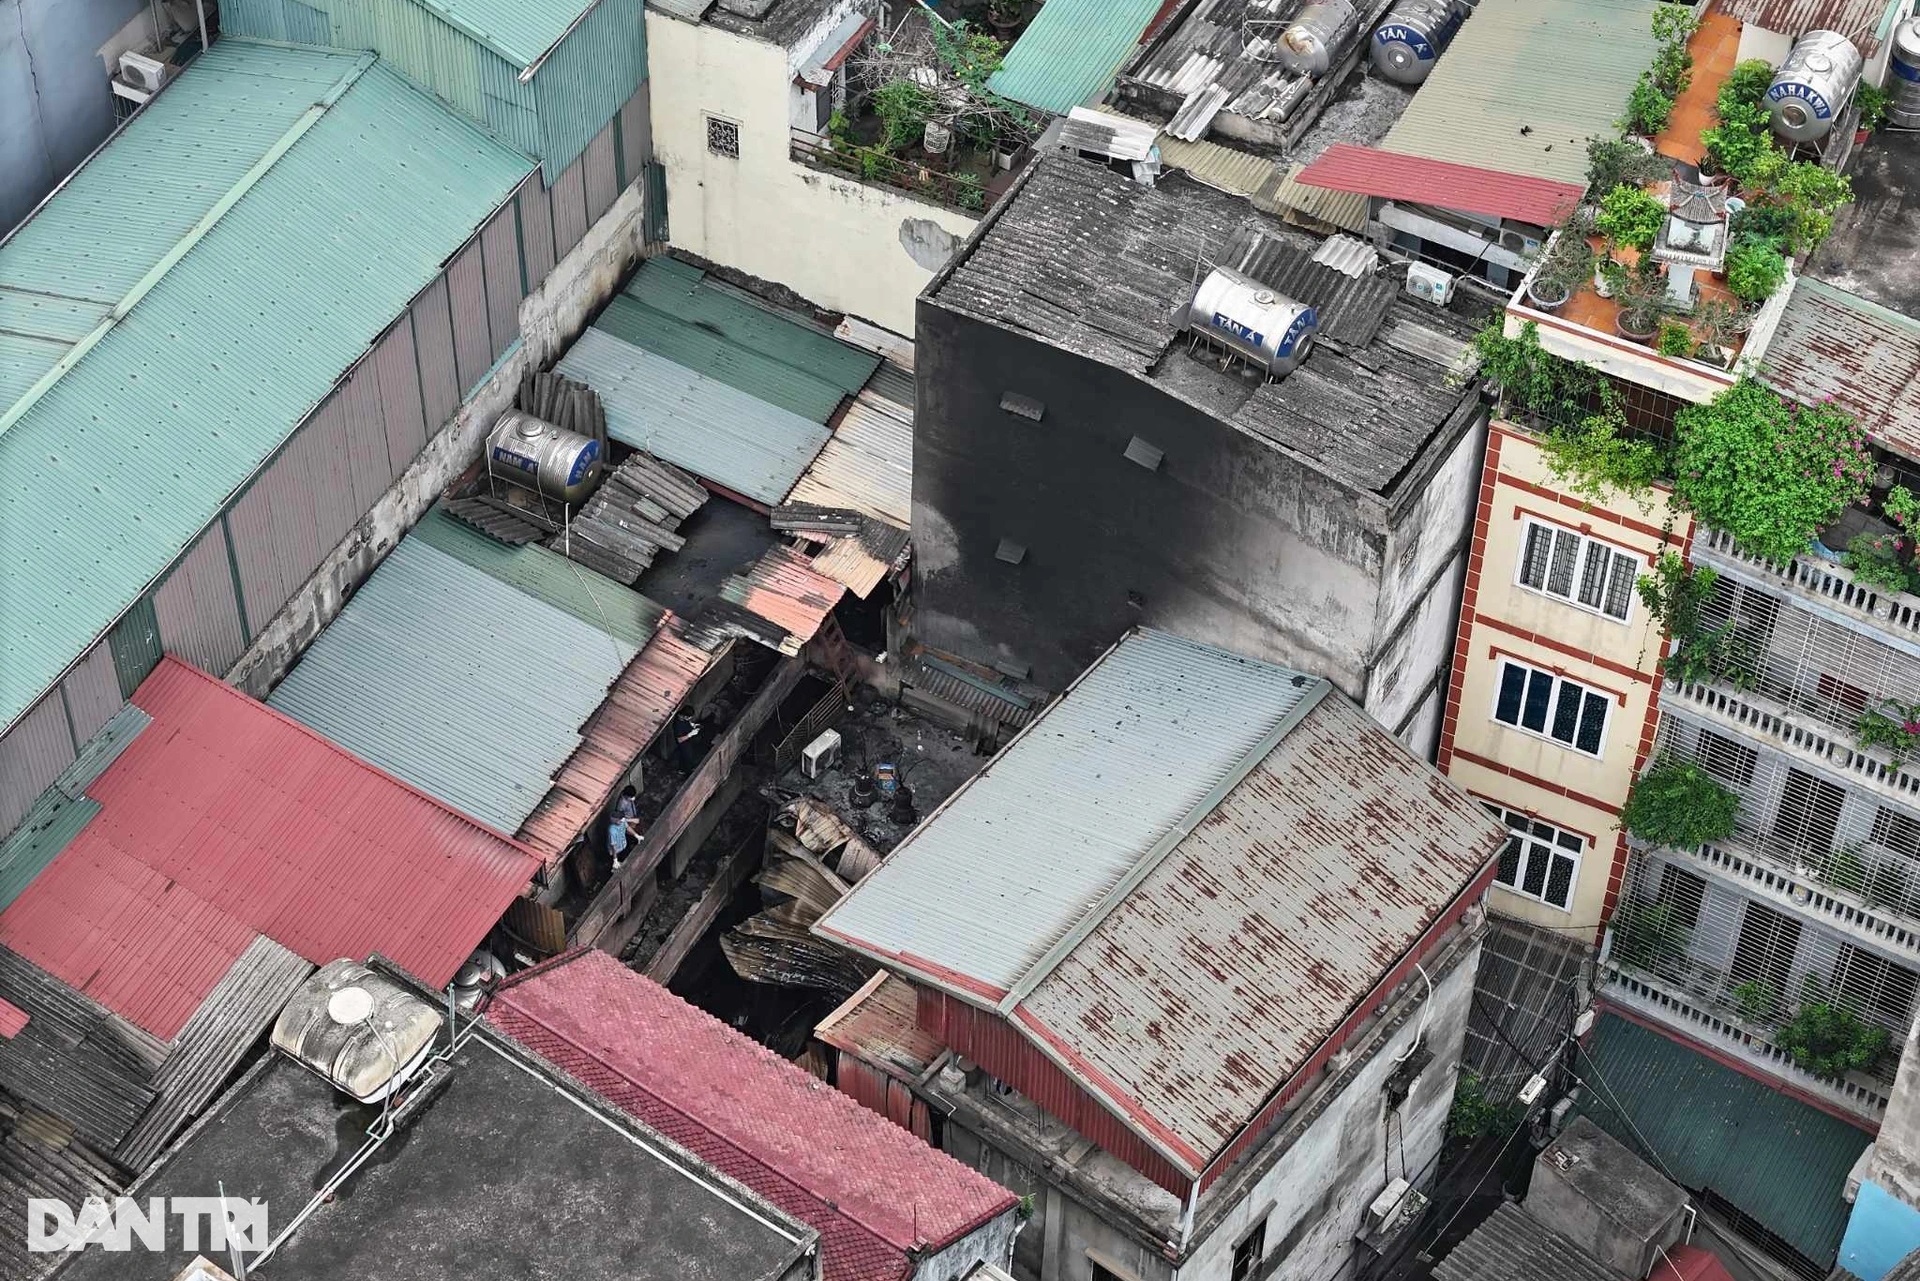 Sau vụ cháy 14 người tử vong, Hà Nội tổng kiểm tra nhà trọ trong 3 tuần - 2